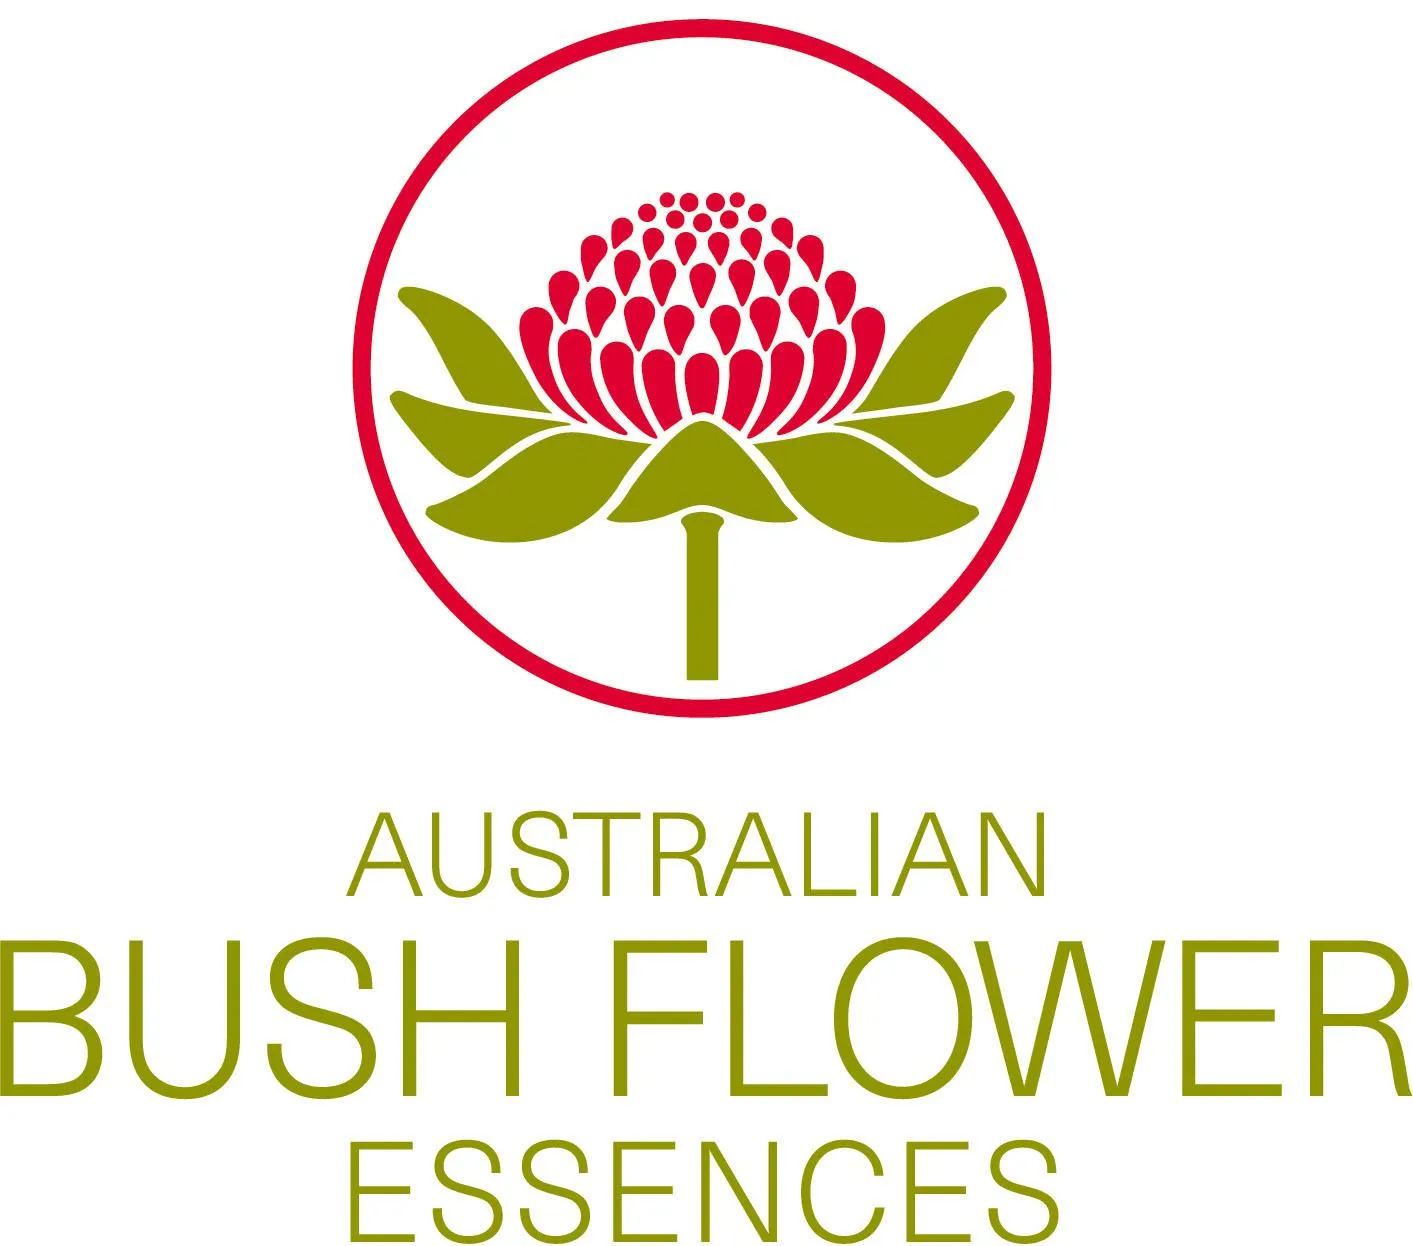 AUSTRALIAN BUSH FLOWERS